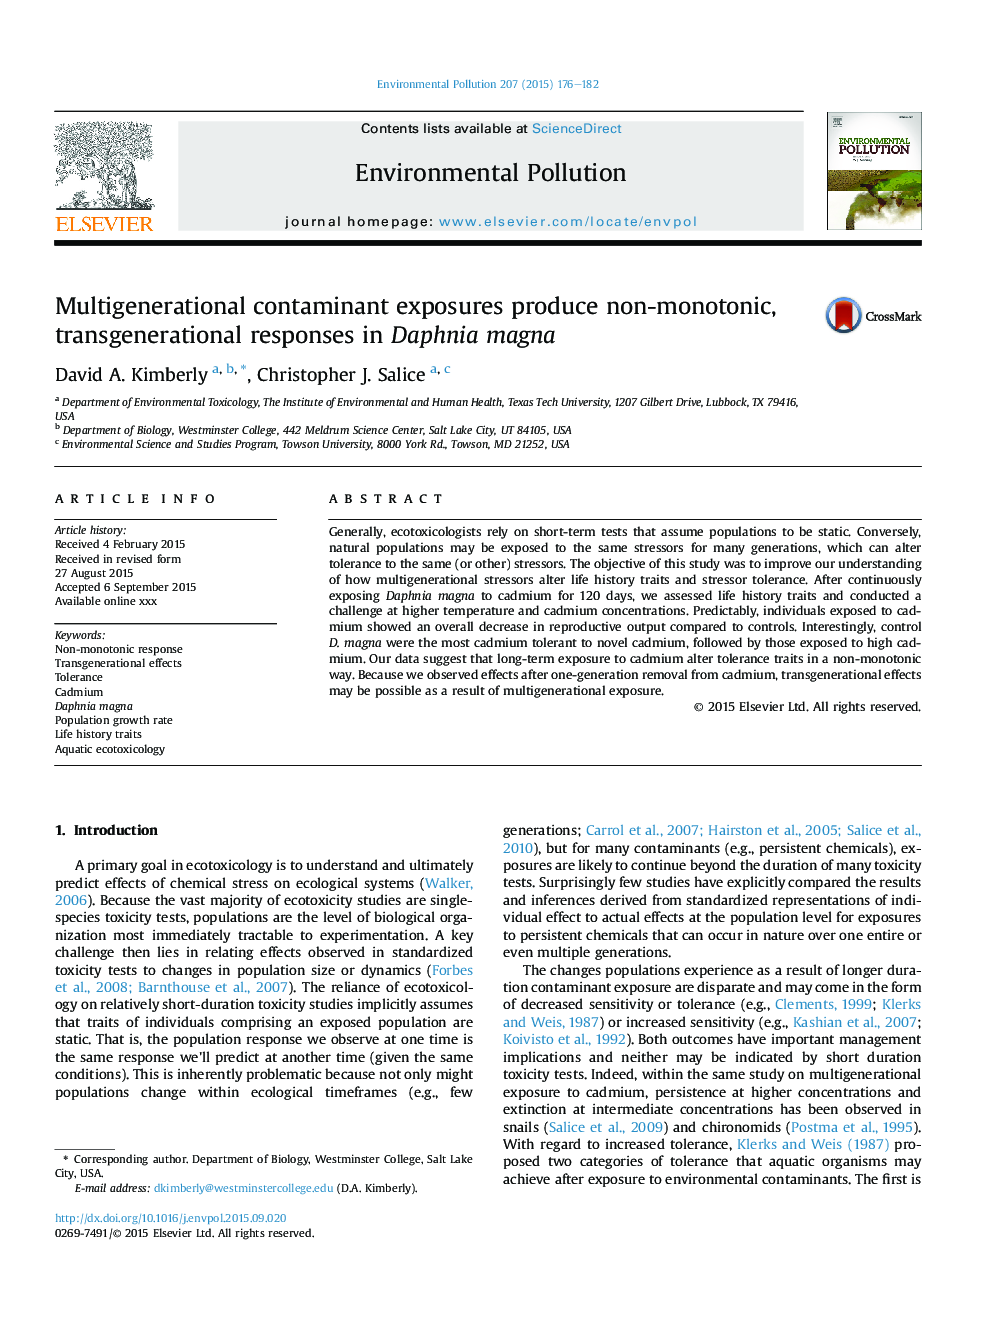 Multigenerational contaminant exposures produce non-monotonic, transgenerational responses in Daphnia magna